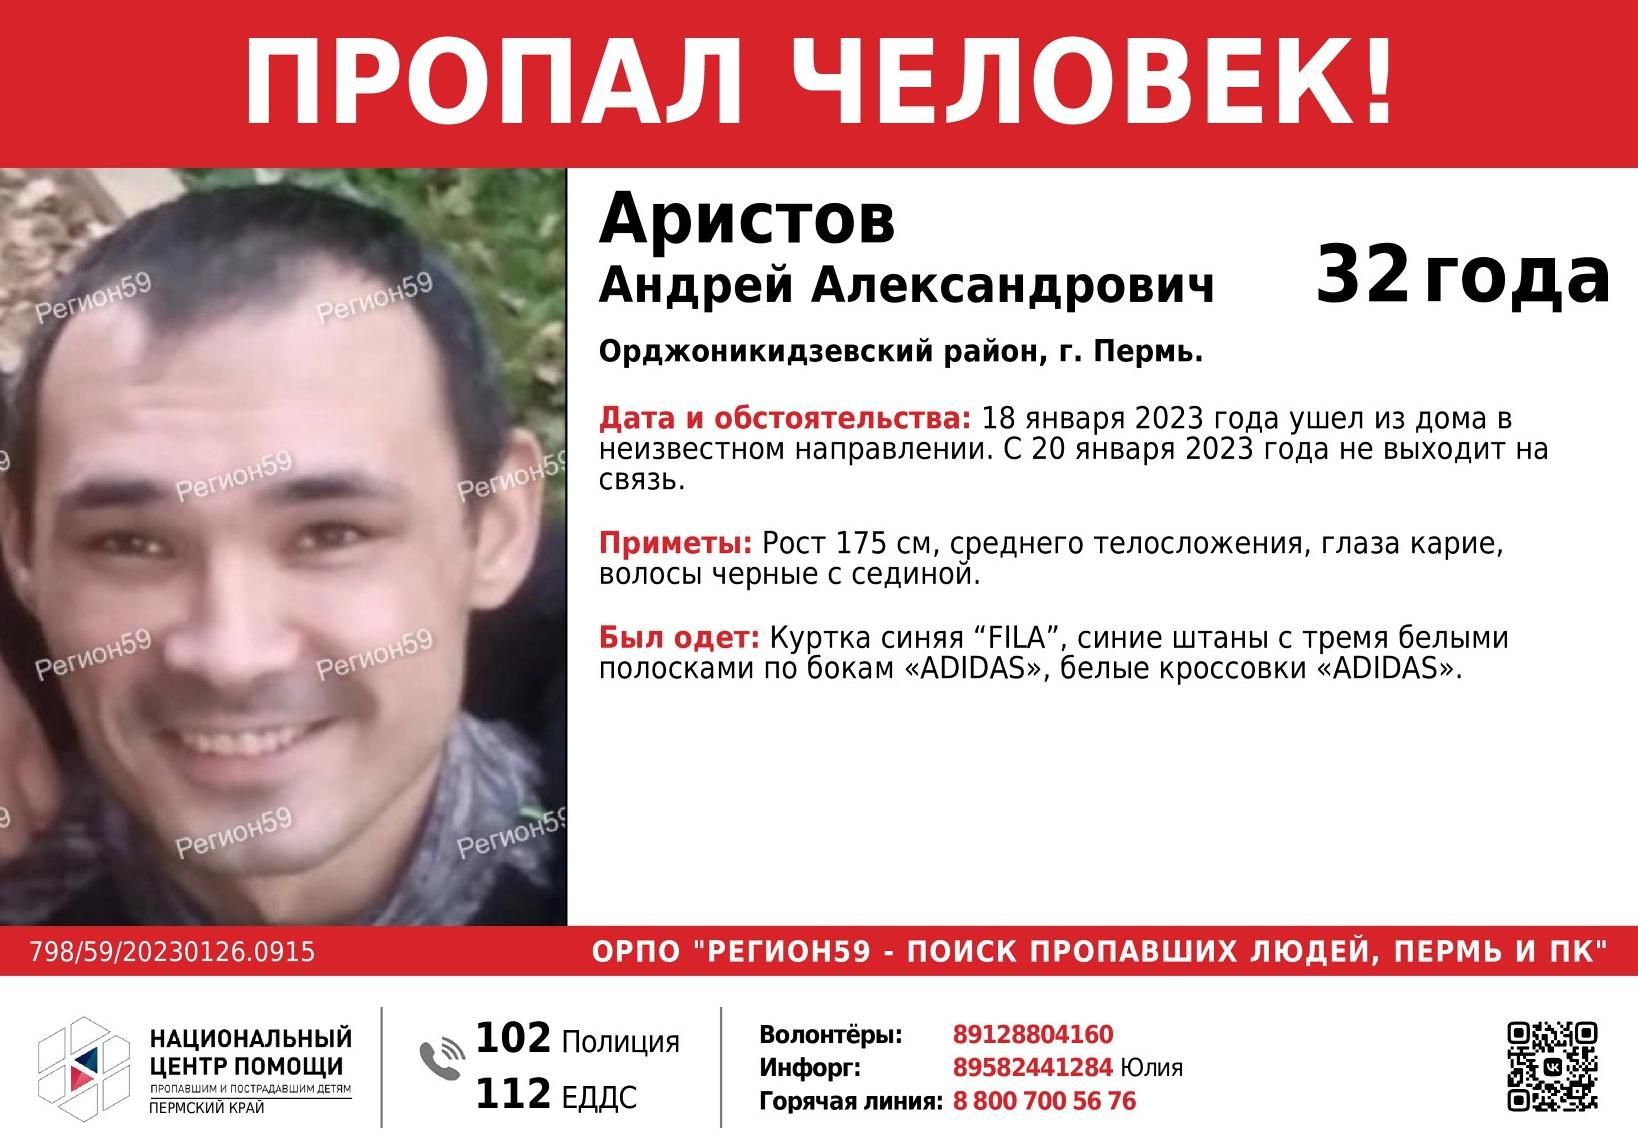 В Орджоникидзевском районе Перми ушел из дома и пропал 32-летний мужчина